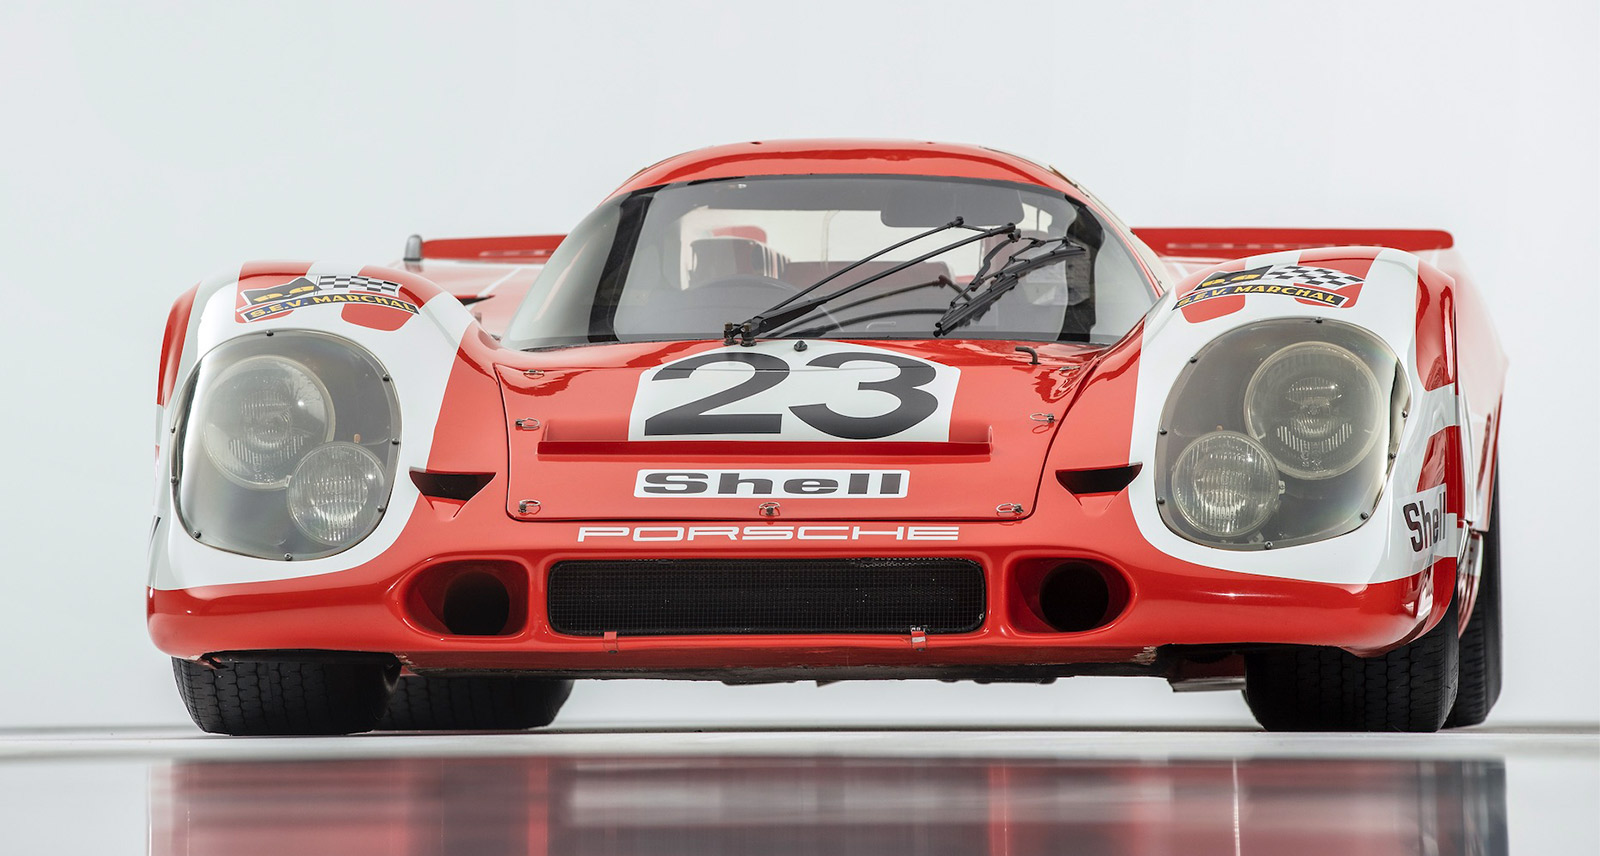 Porsche Livery designs